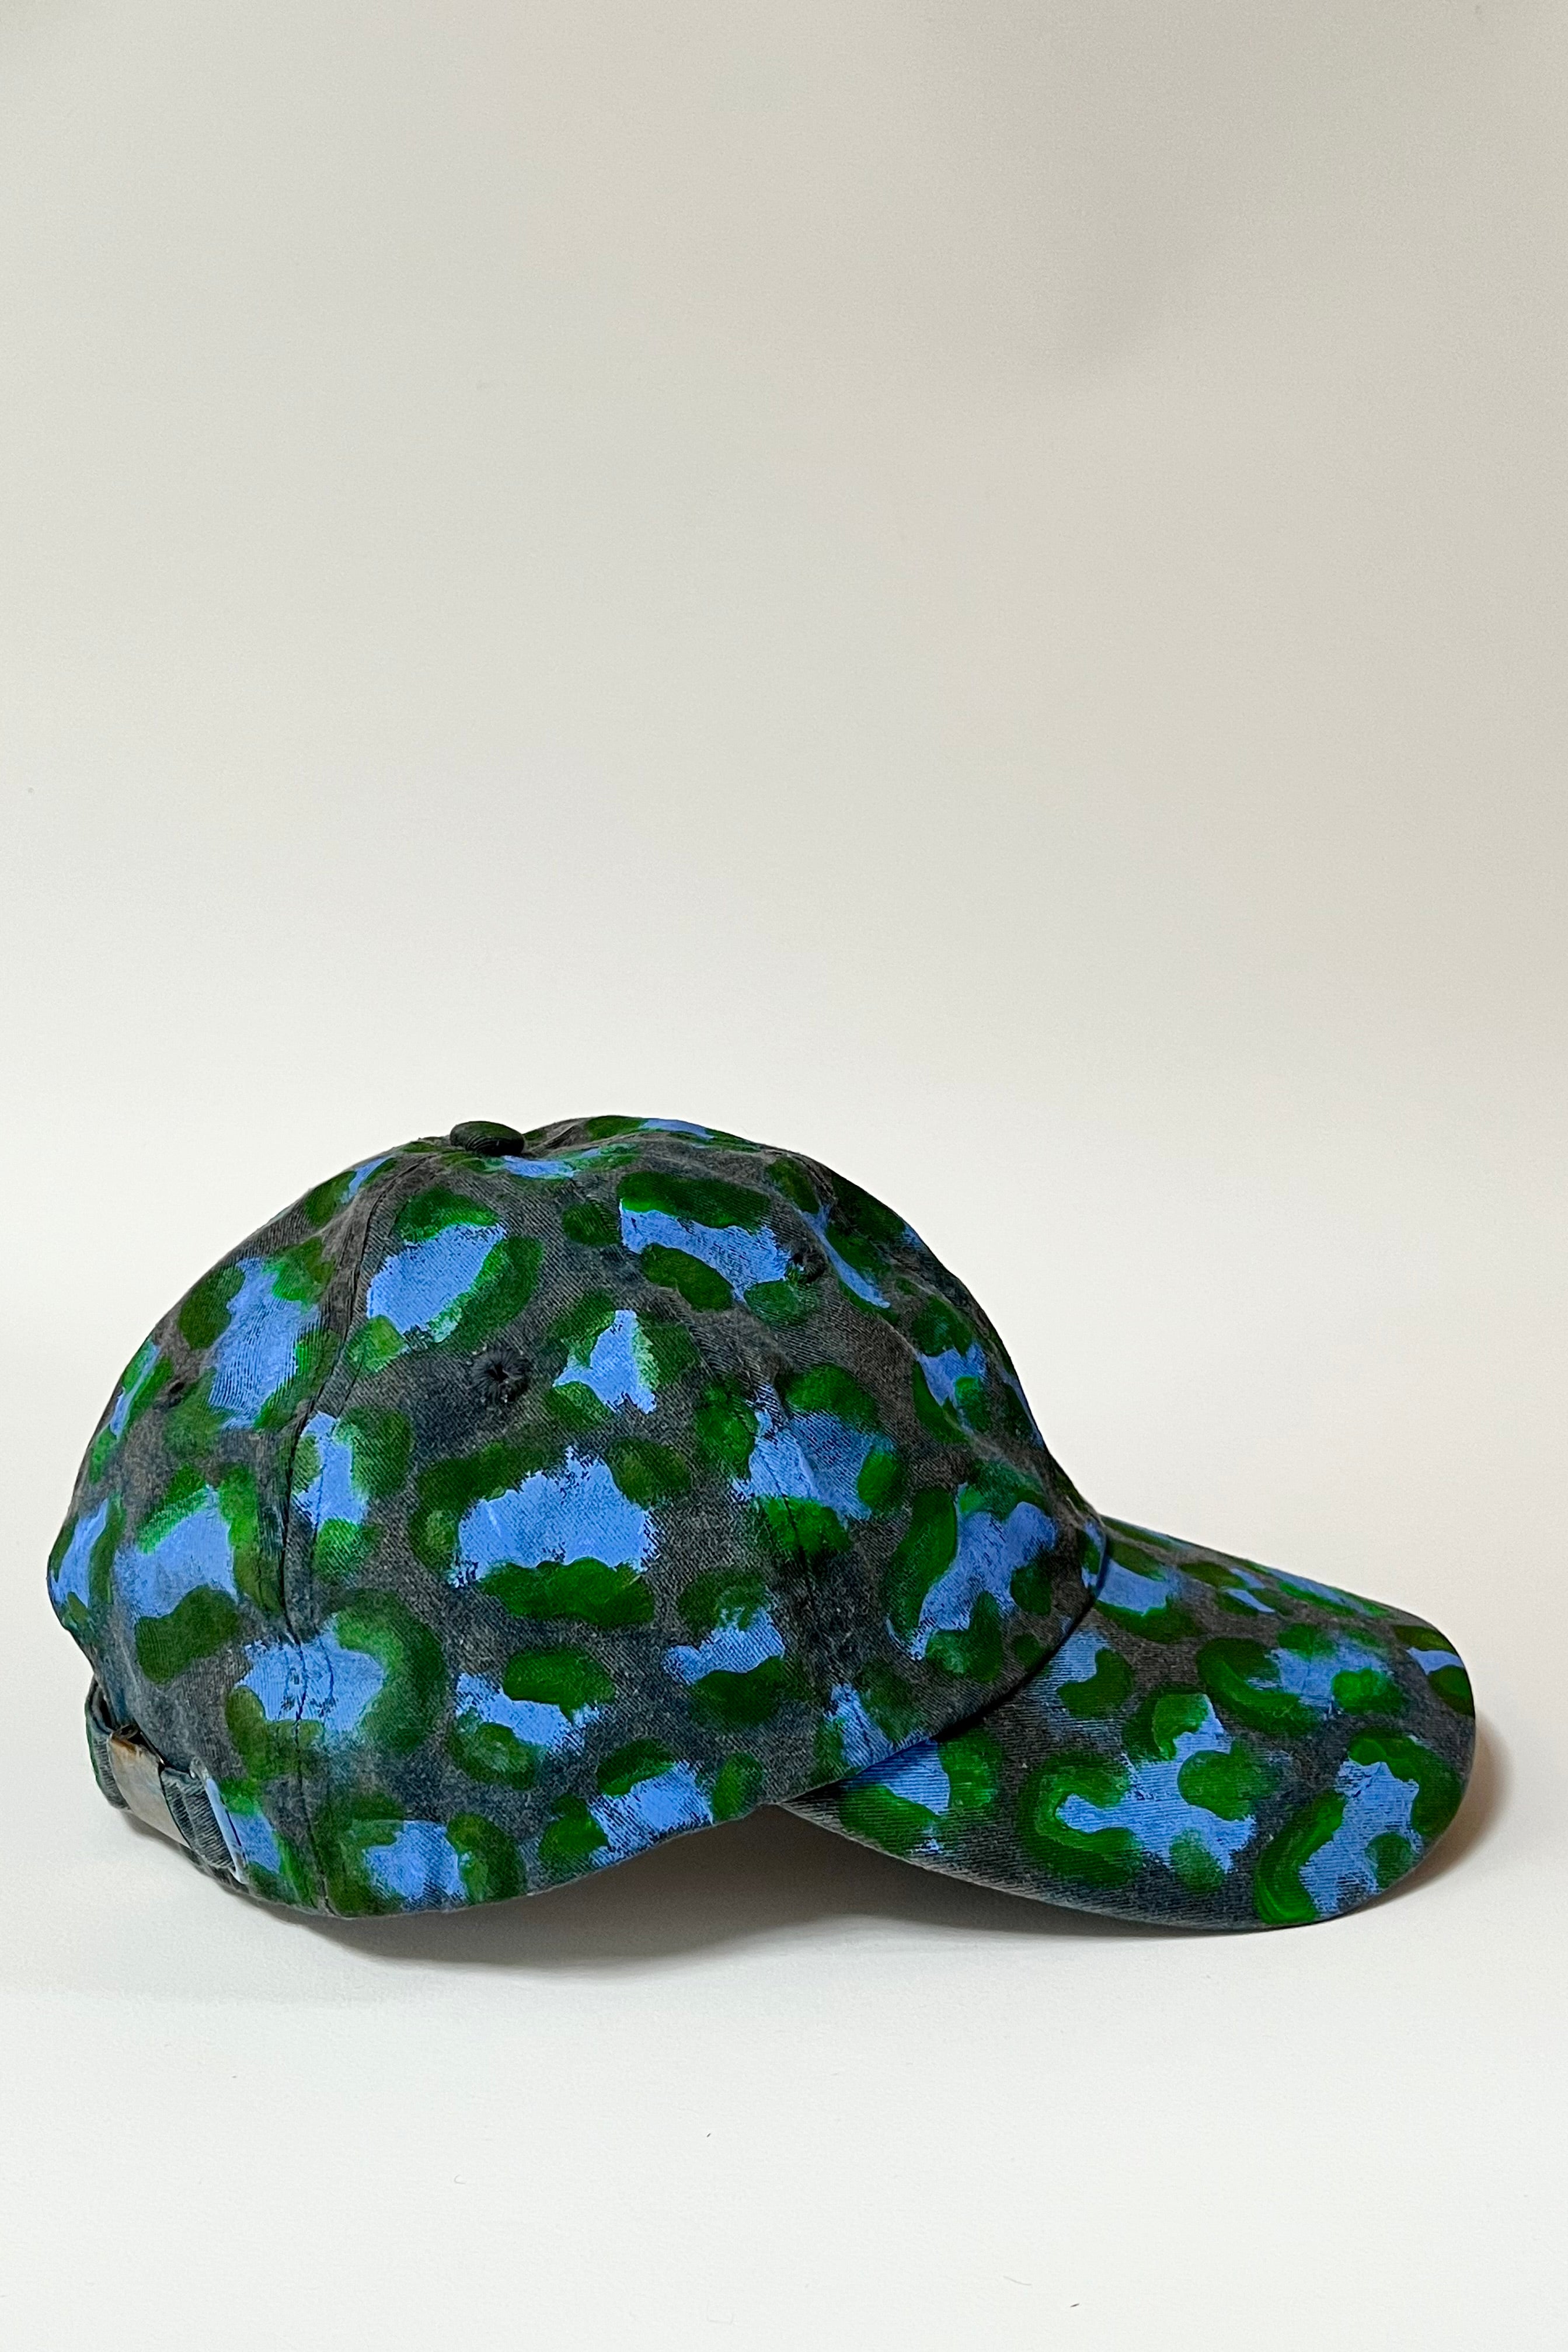 Painted Hat - Leopard